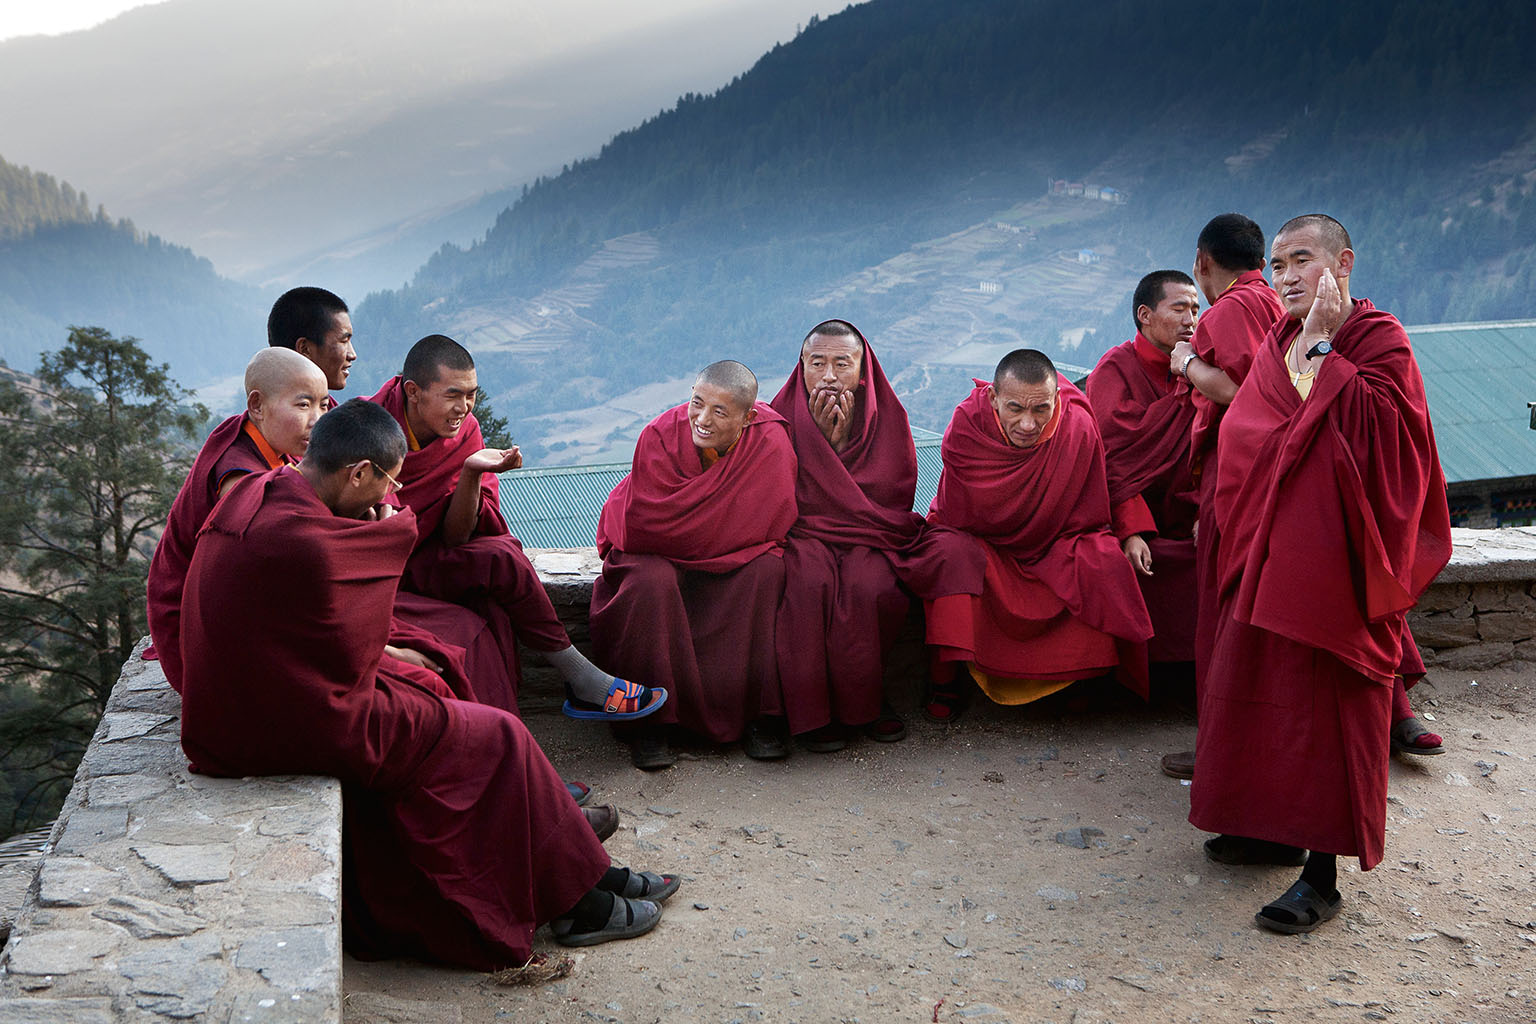 Buddhističtí mniši. Tibetský buddhistický klášter Thubten Choling se nachází v Nepálu poblíž pěší cesty z Jiri pod Mount Everestem. Mniši tu mívali hodně návštěvníků z řad turistů a horolezců, ale když v polovině cesty postavili letiště v Lukle, mají už zase svůj klid k meditacím.